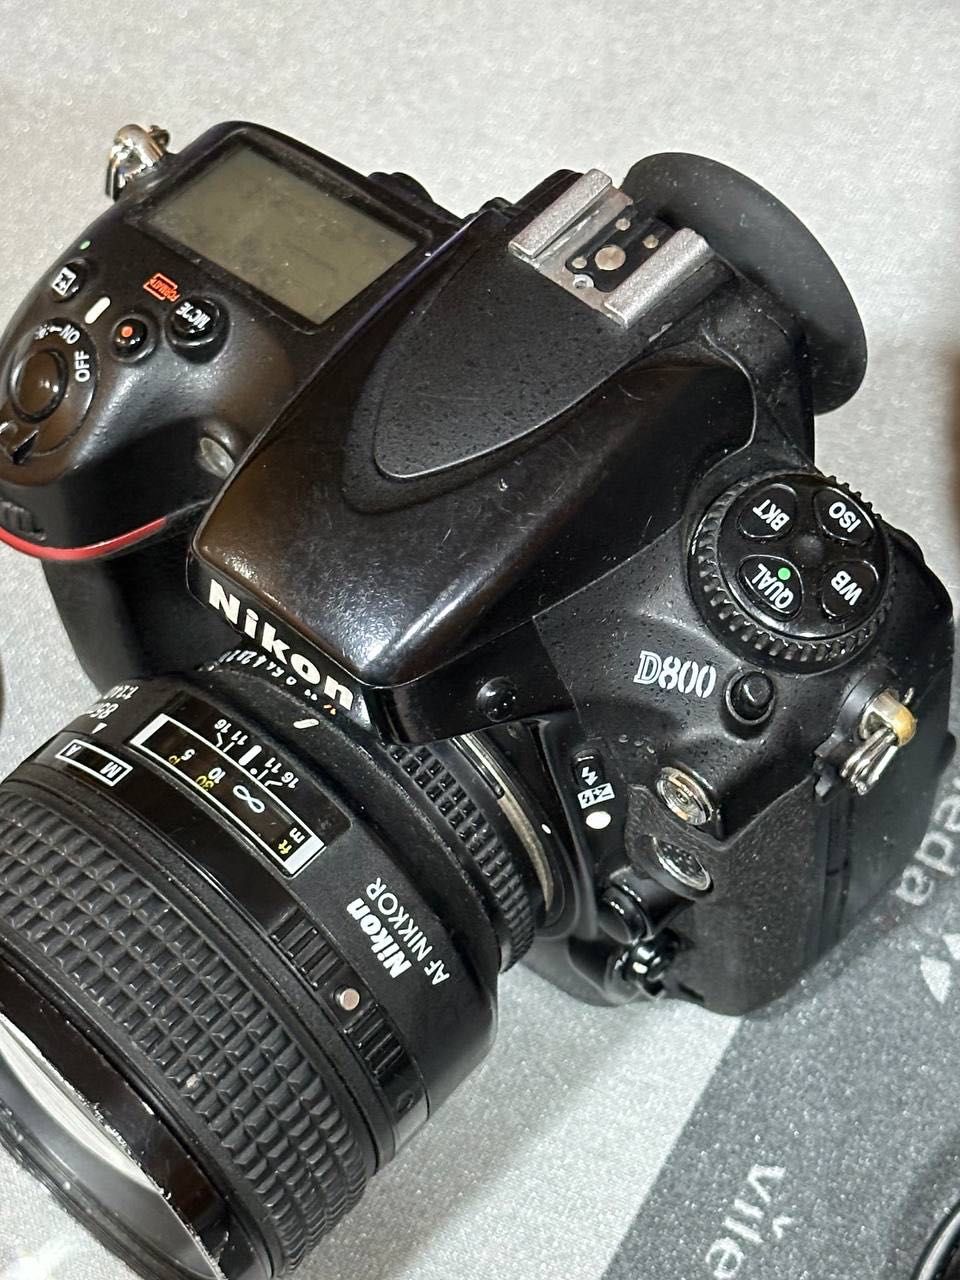 Nikon d800 + nikkor 85mm 1.4D срочно